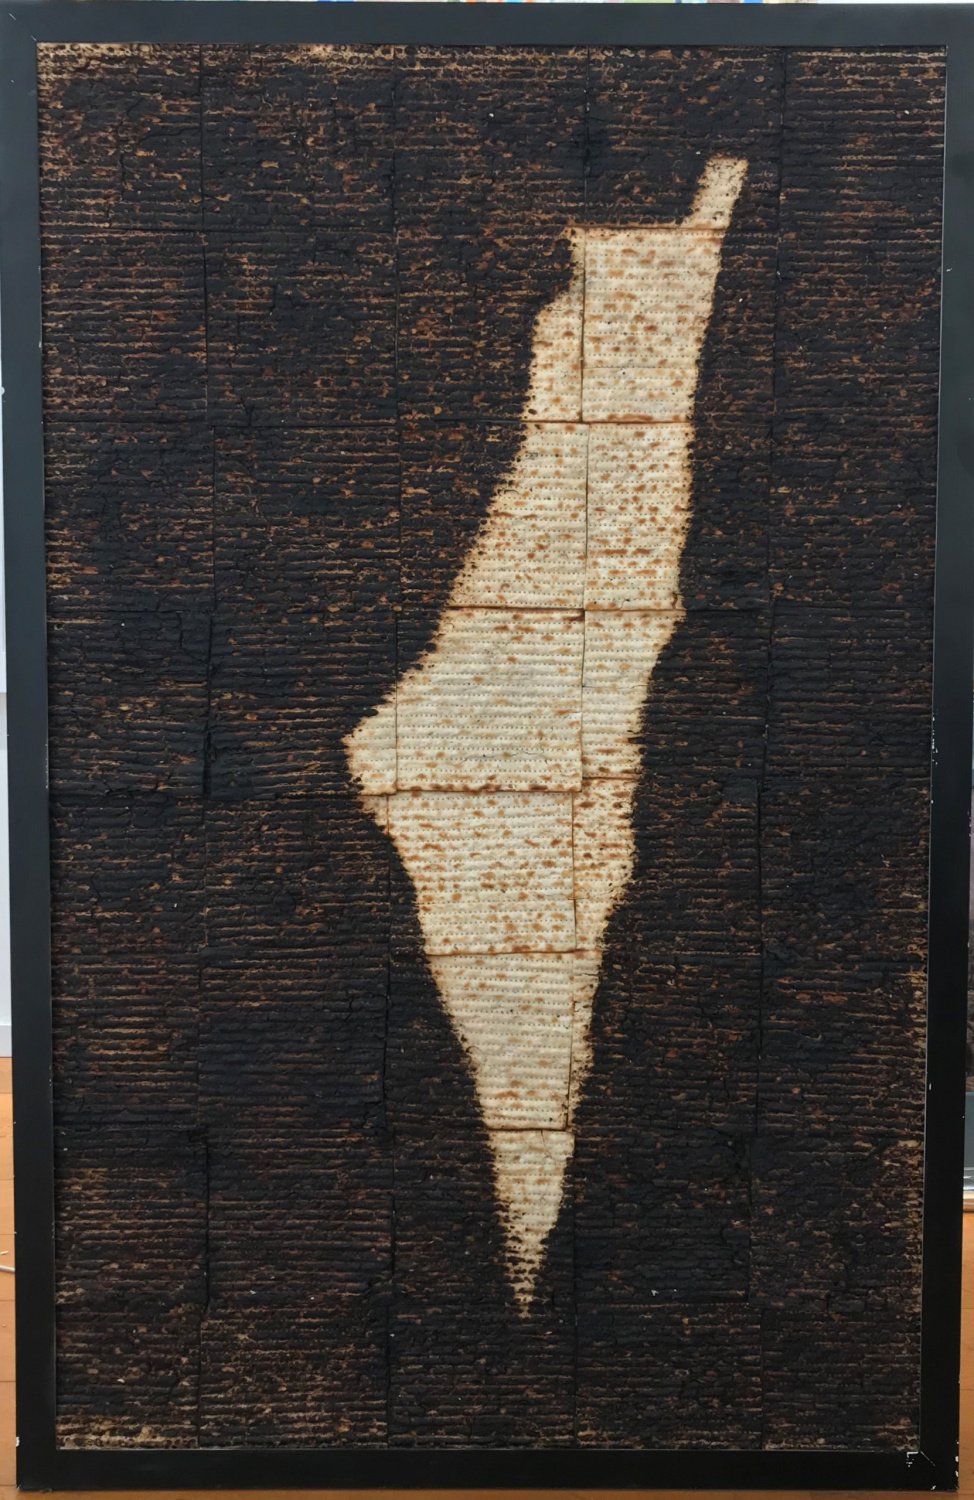 Ivan Schukin - Israel - Matza - Gallery in Jerusalem - Kings Gallery - Fine art - Jerusalem.